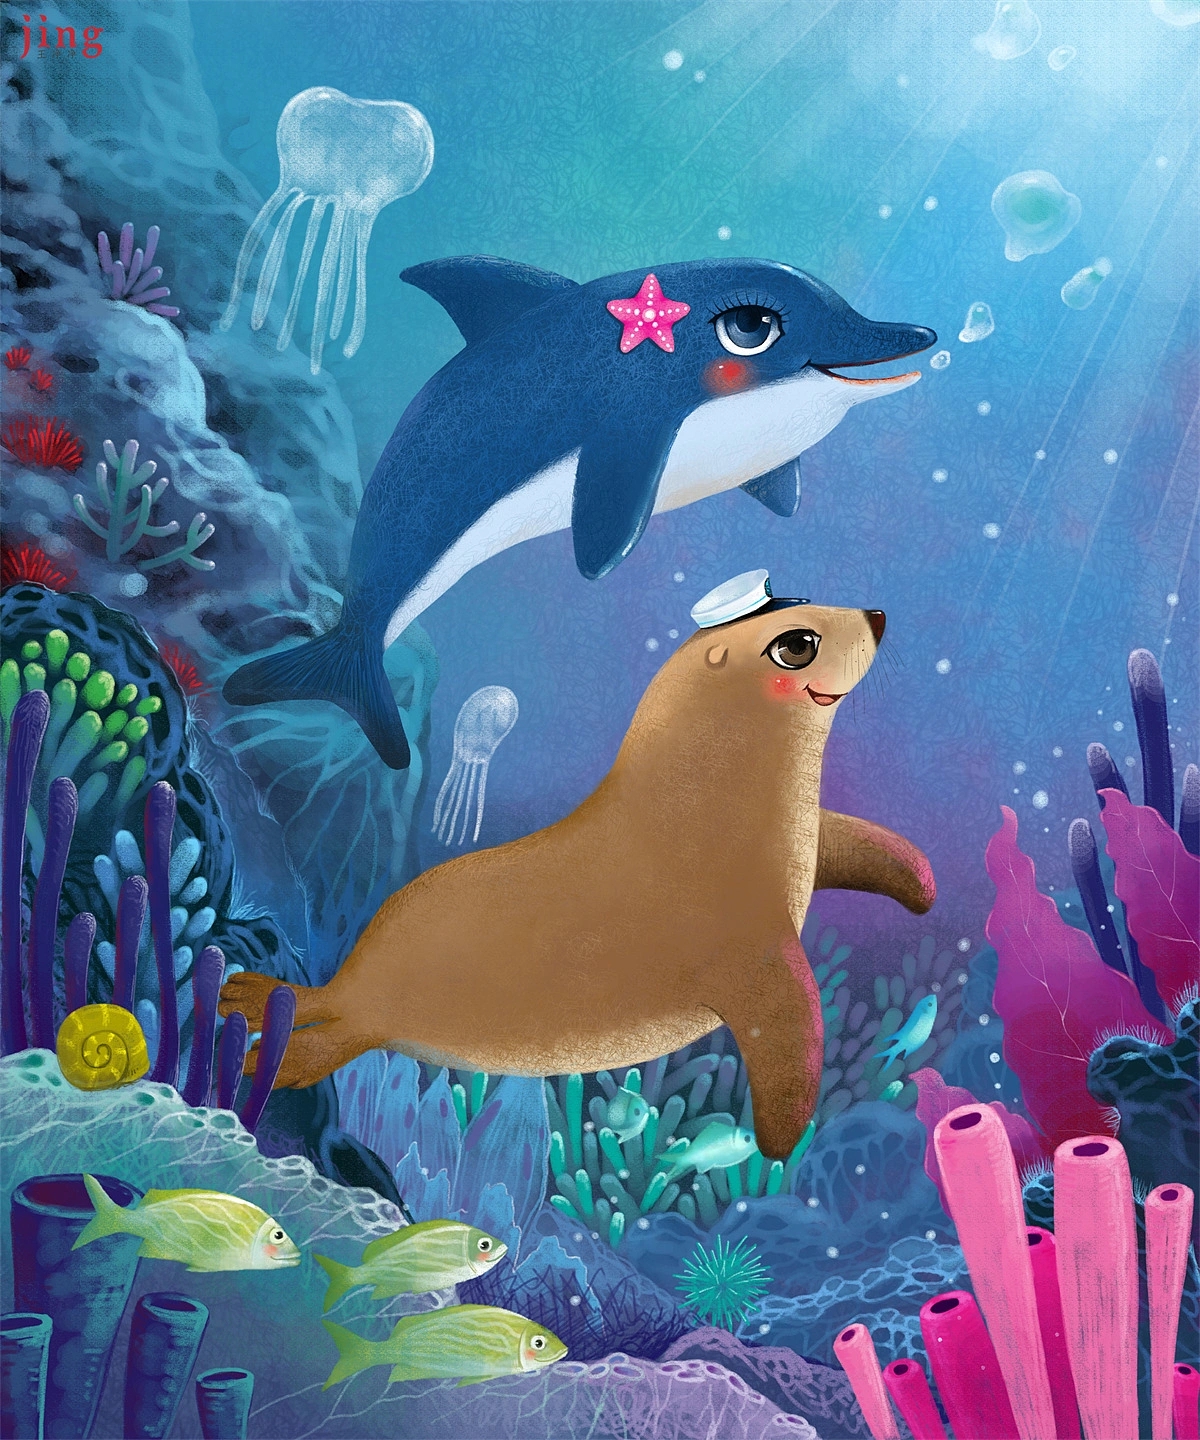 绘本《 喜欢我的八个理由》的插画 海狮和海豚